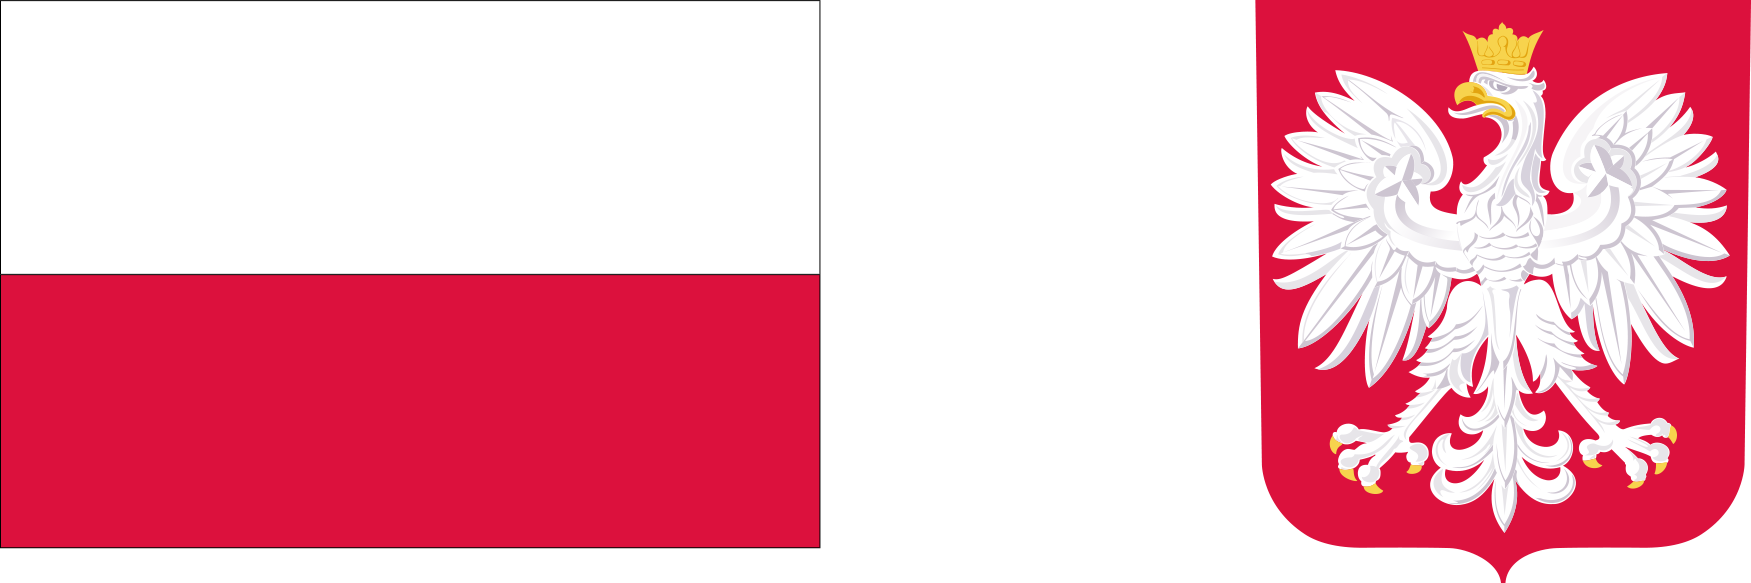 Obraz przedstawia flagę Polski oraz herb Polski